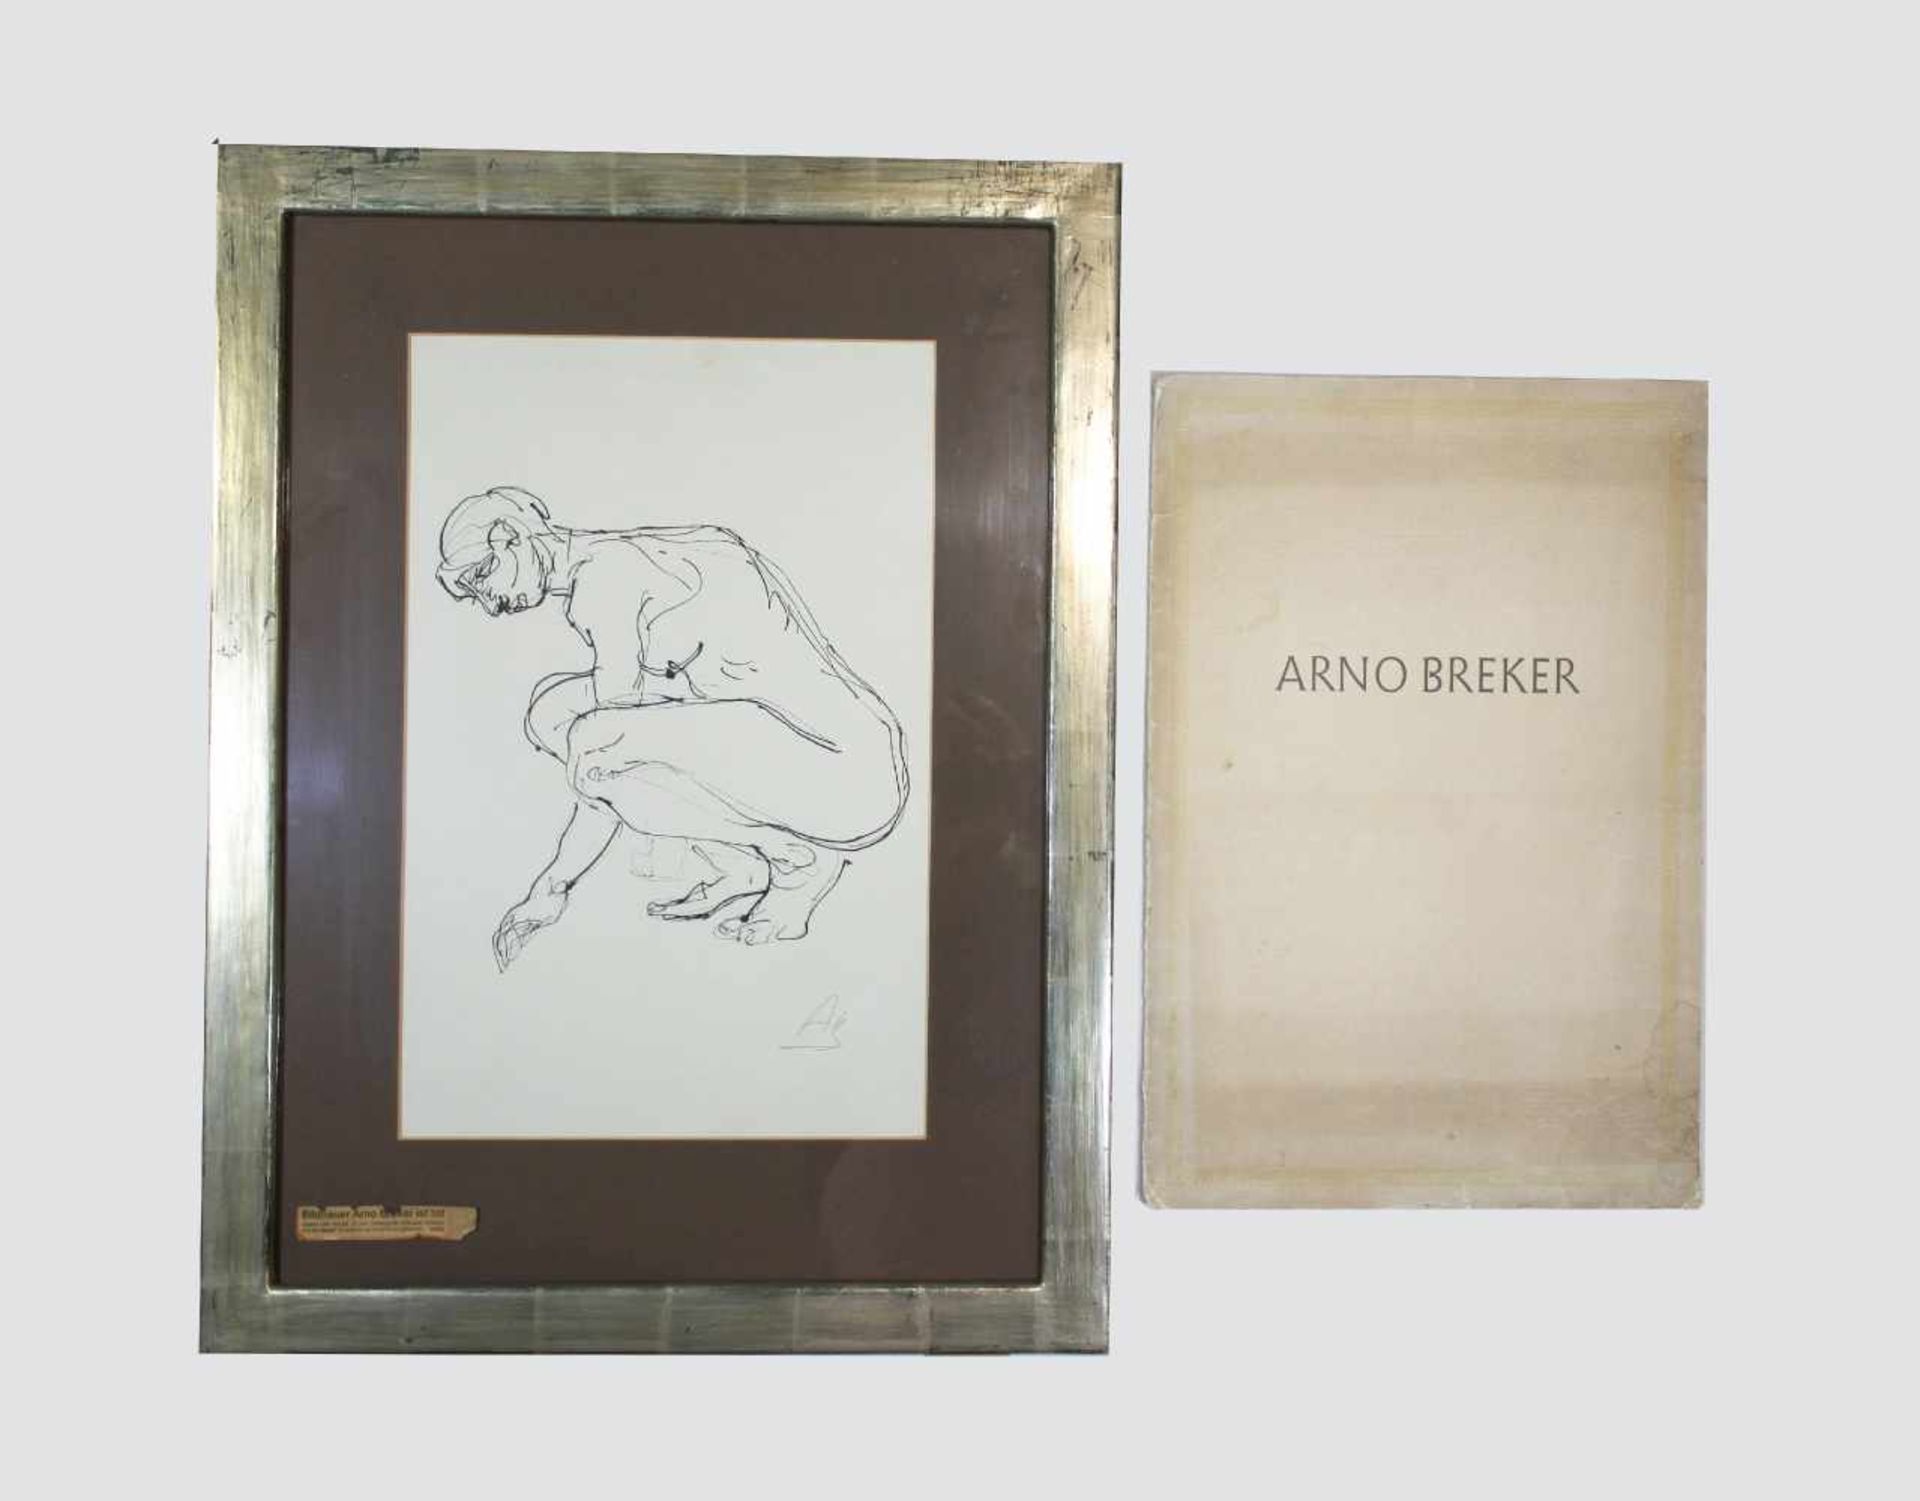 Arno Breker (1990-1991), Zeichnungen, Konvolut aus 7 Akte: 6 Faksimile-Drucke und einem